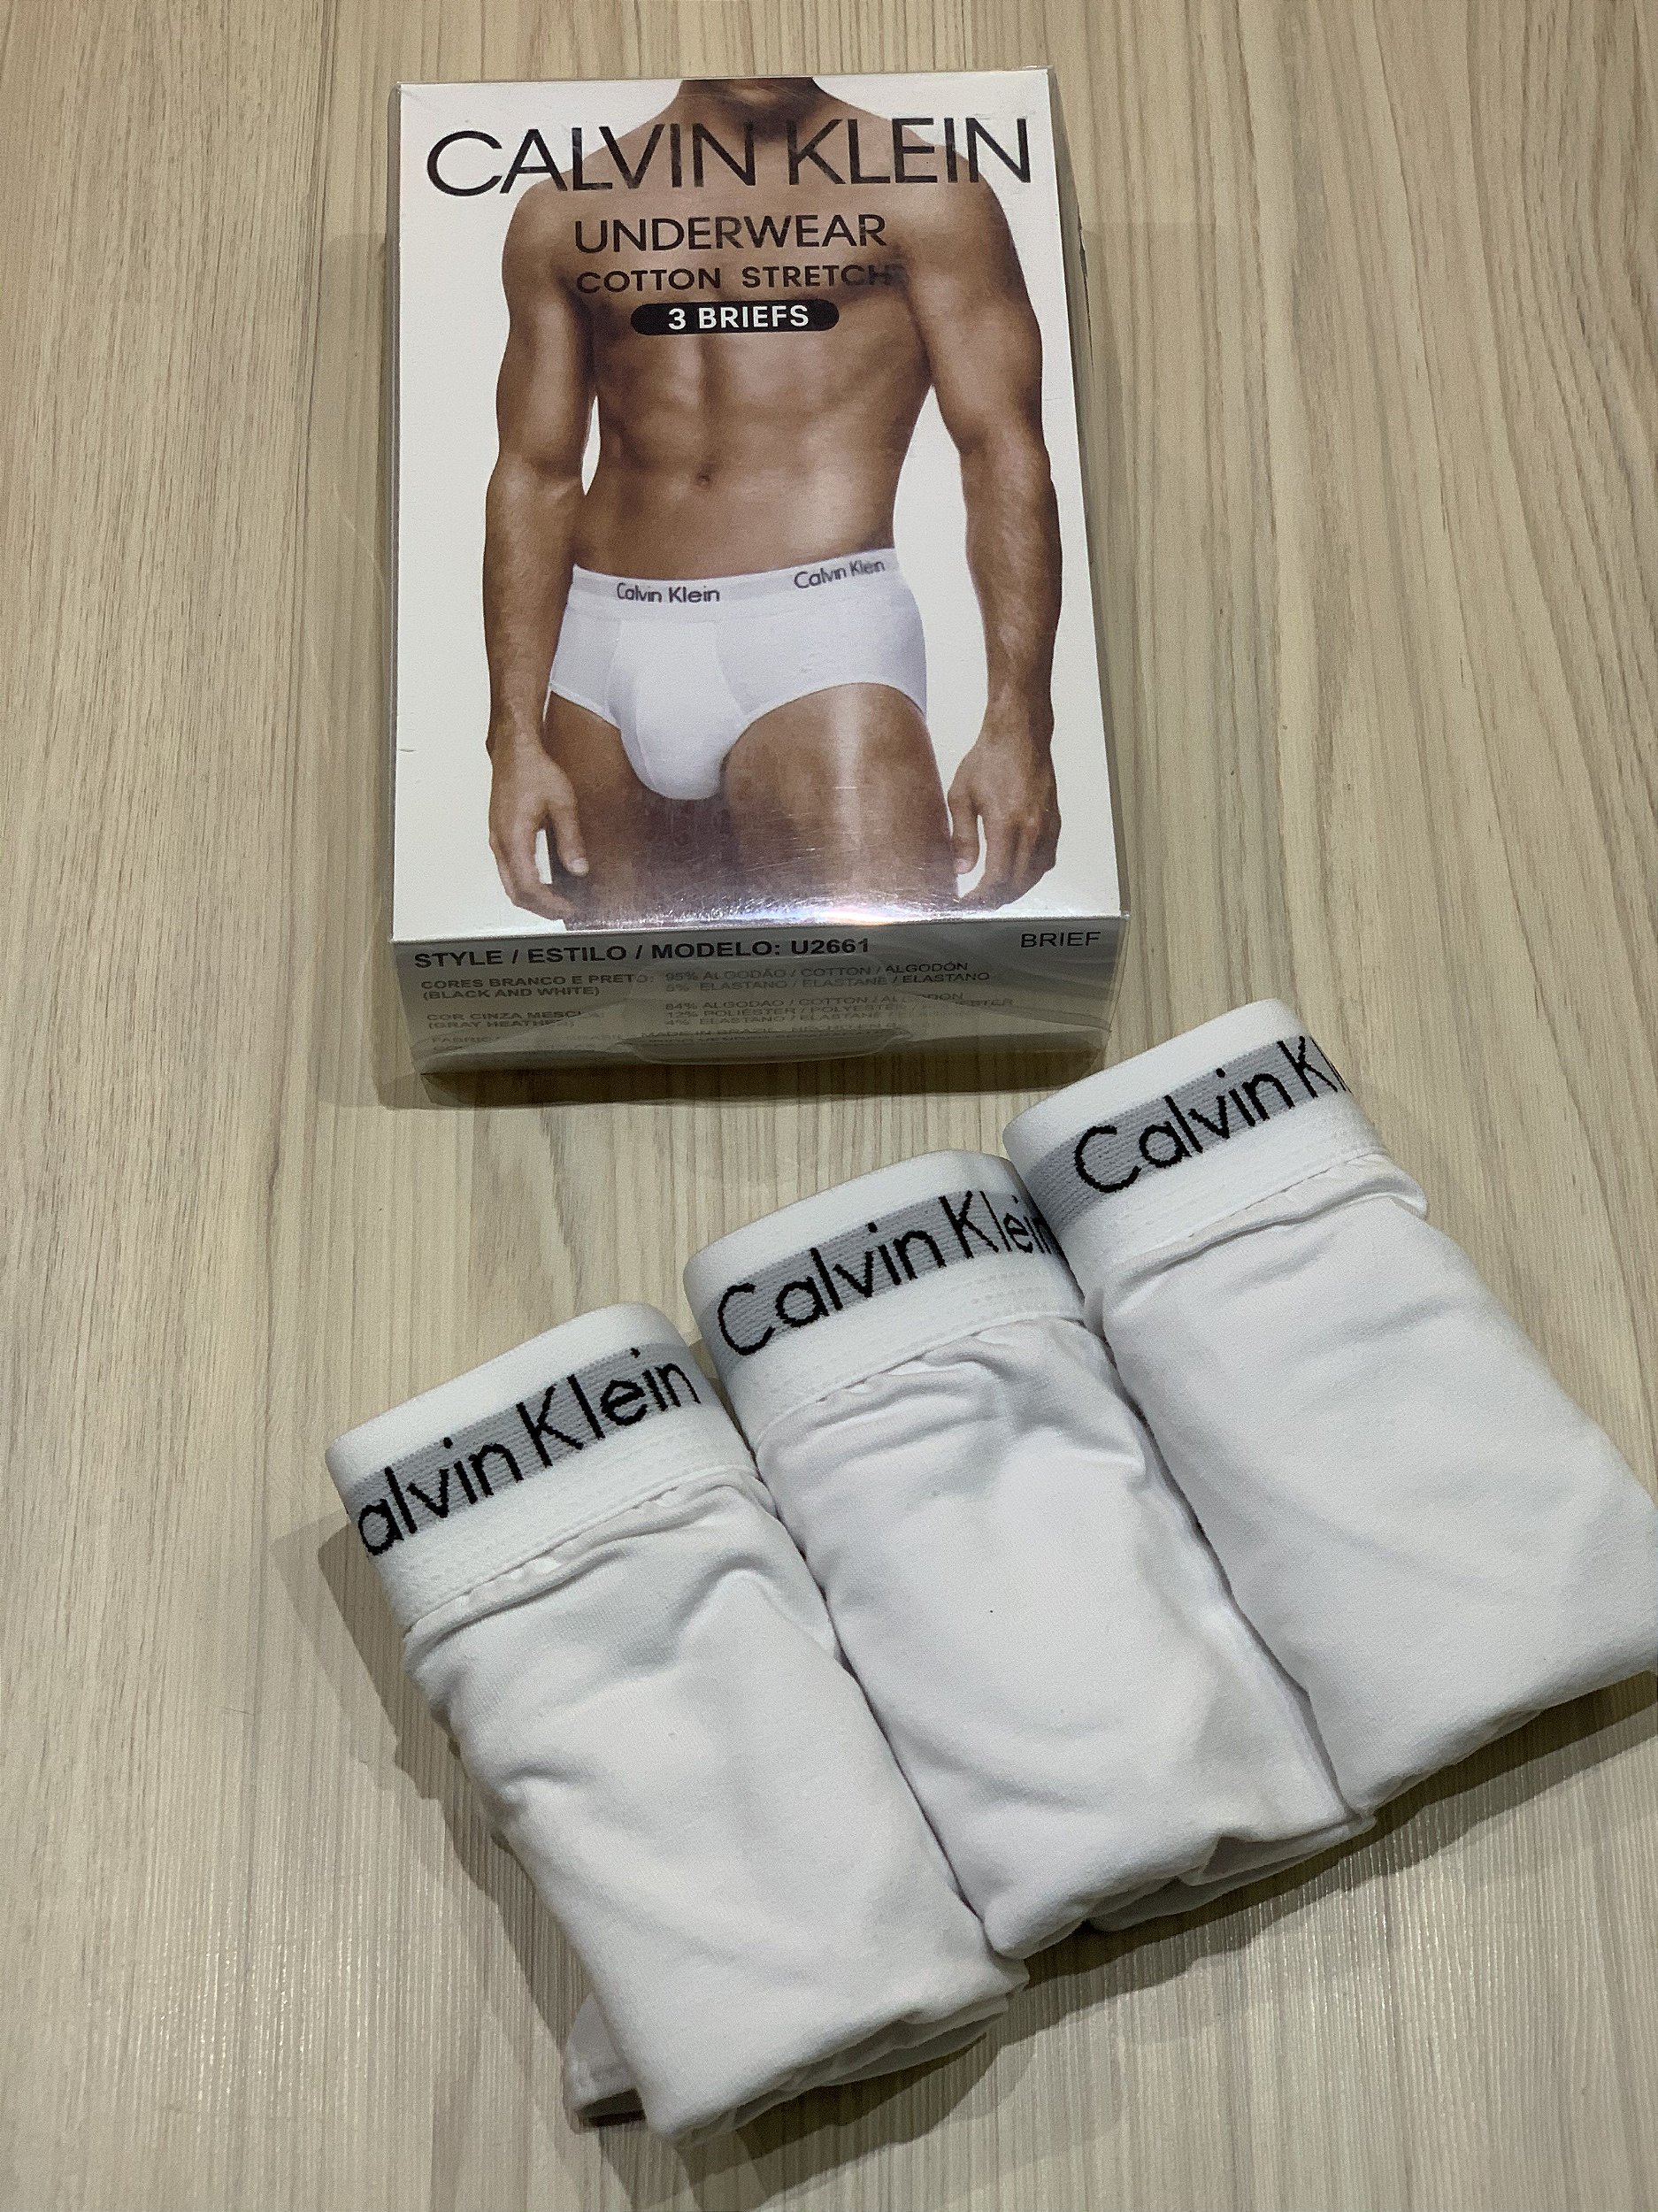 Cueca Calvin Klein Underwear Boxer Long Preta - Compre Agora